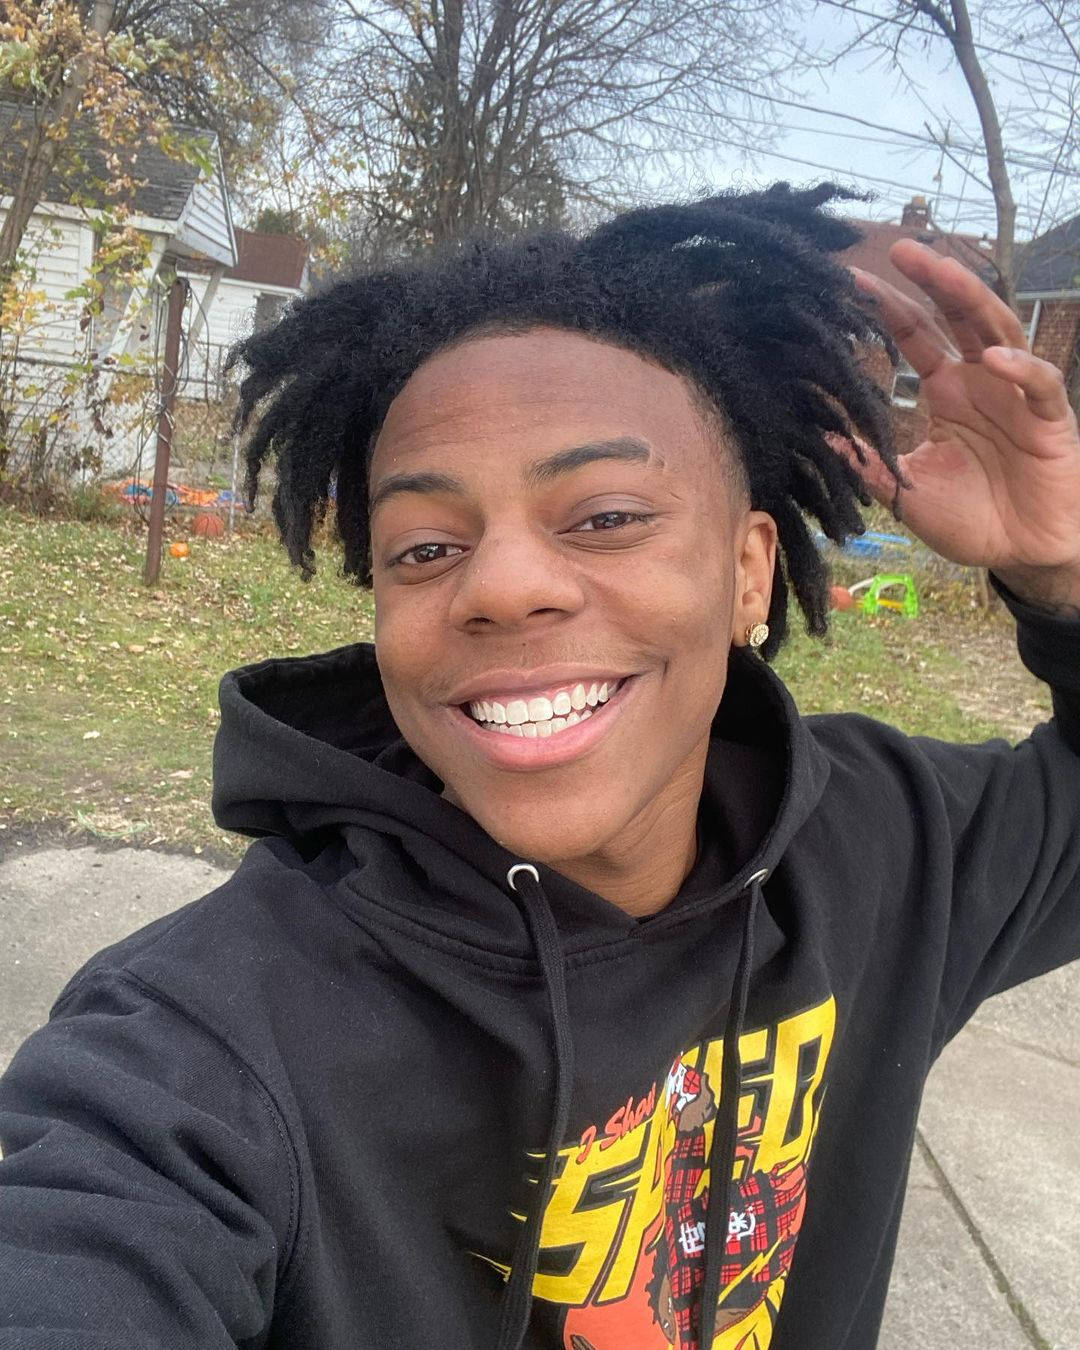 En ung mand med afrohår smiler Wallpaper